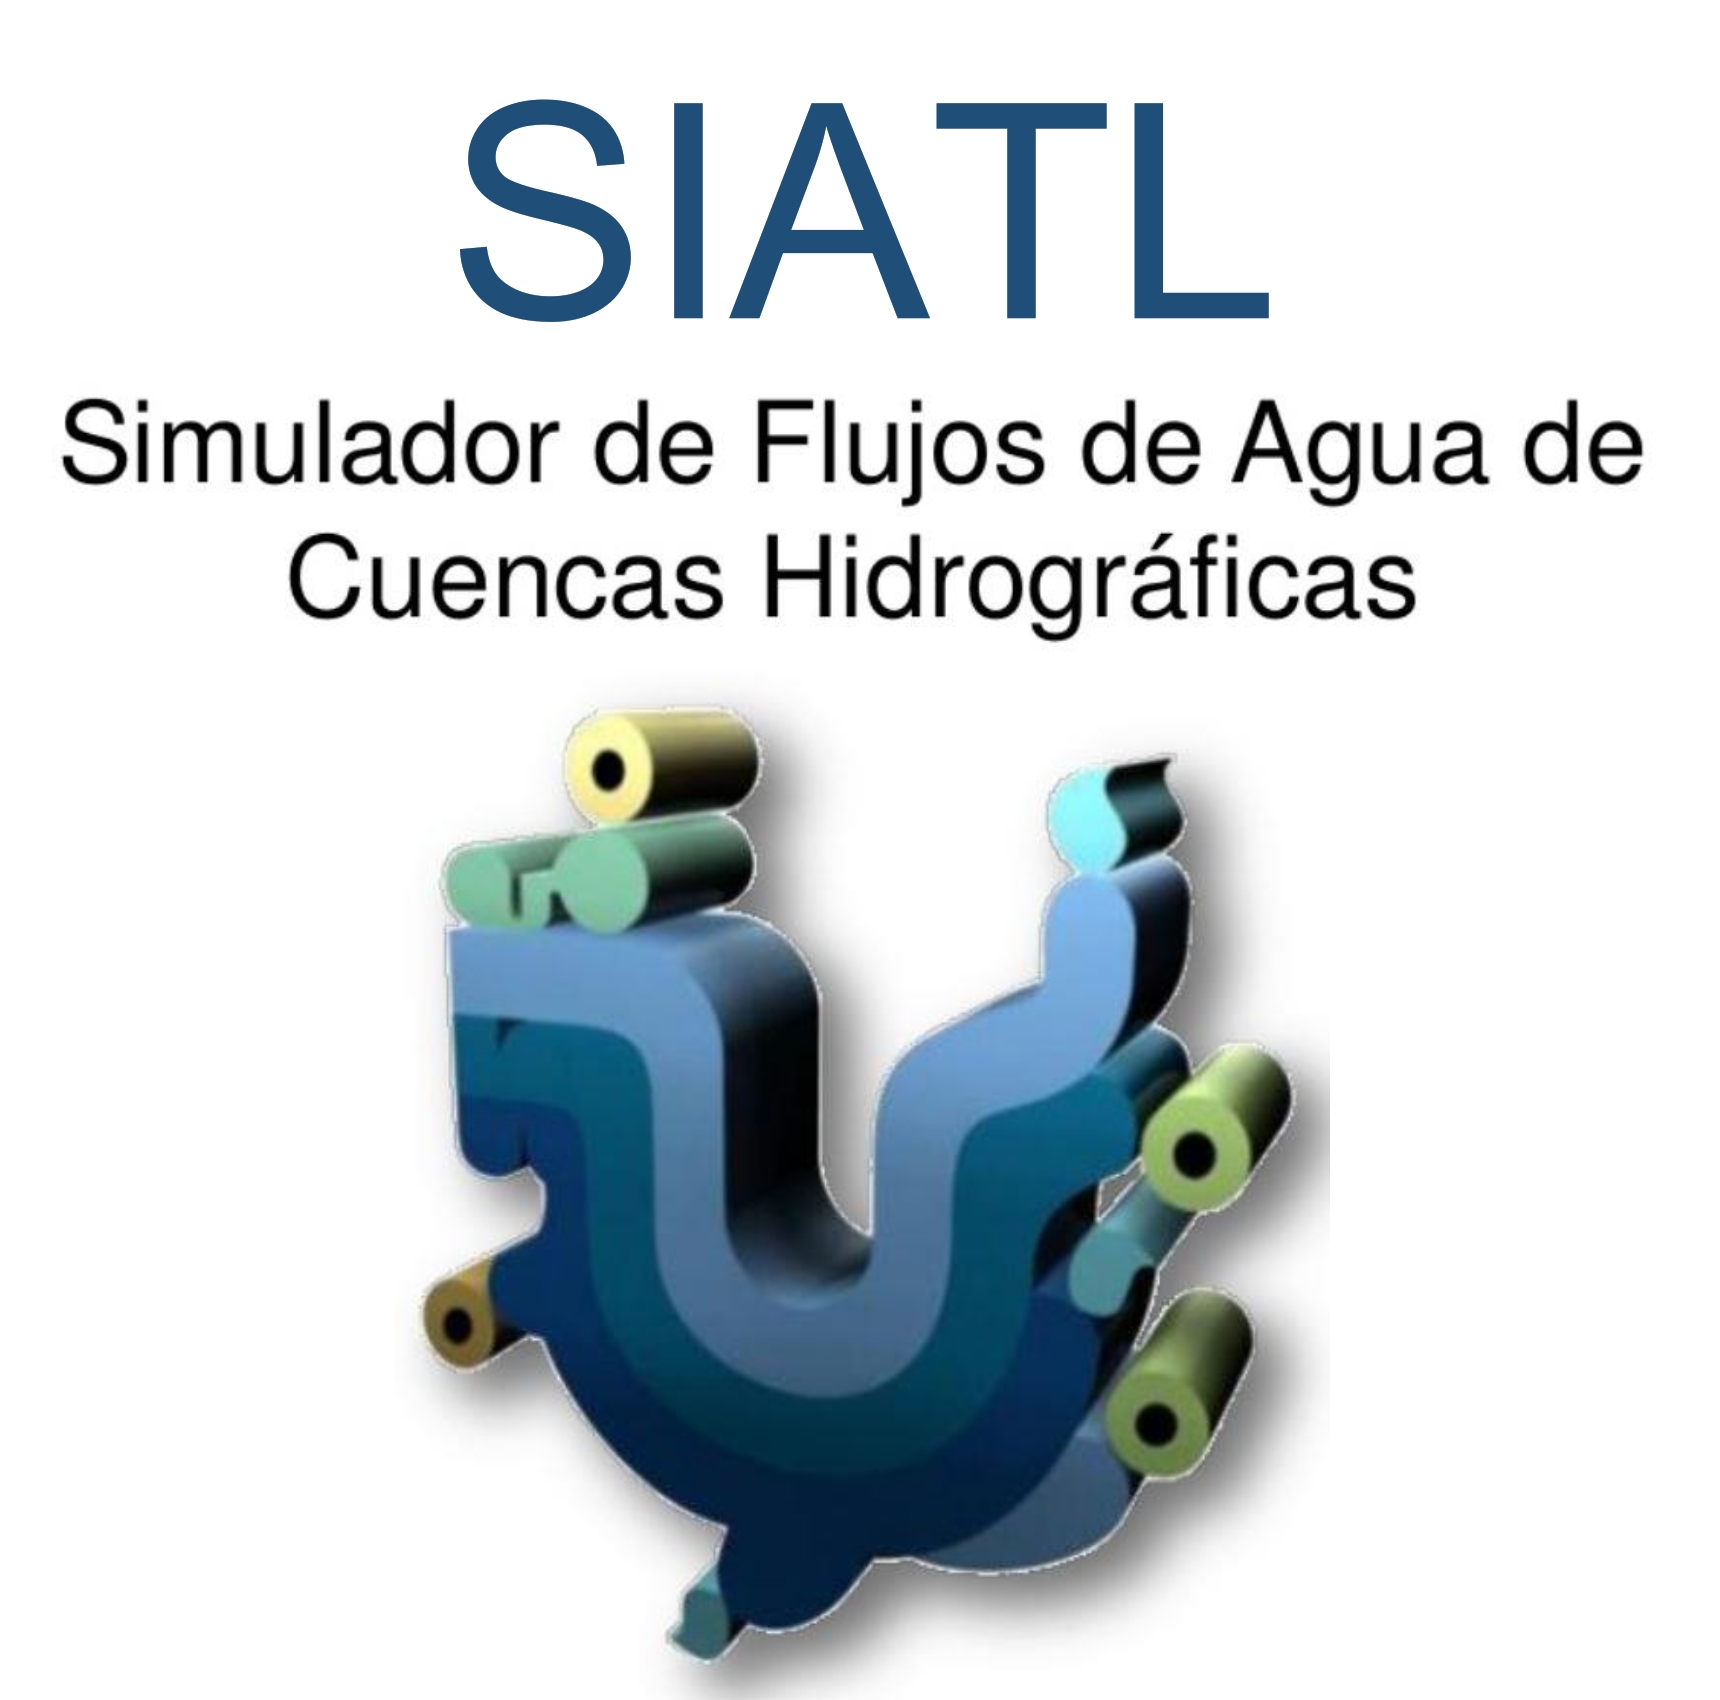  Curso Simulador de Flujos de Agua de Cuencas Hidrológicas SIATL